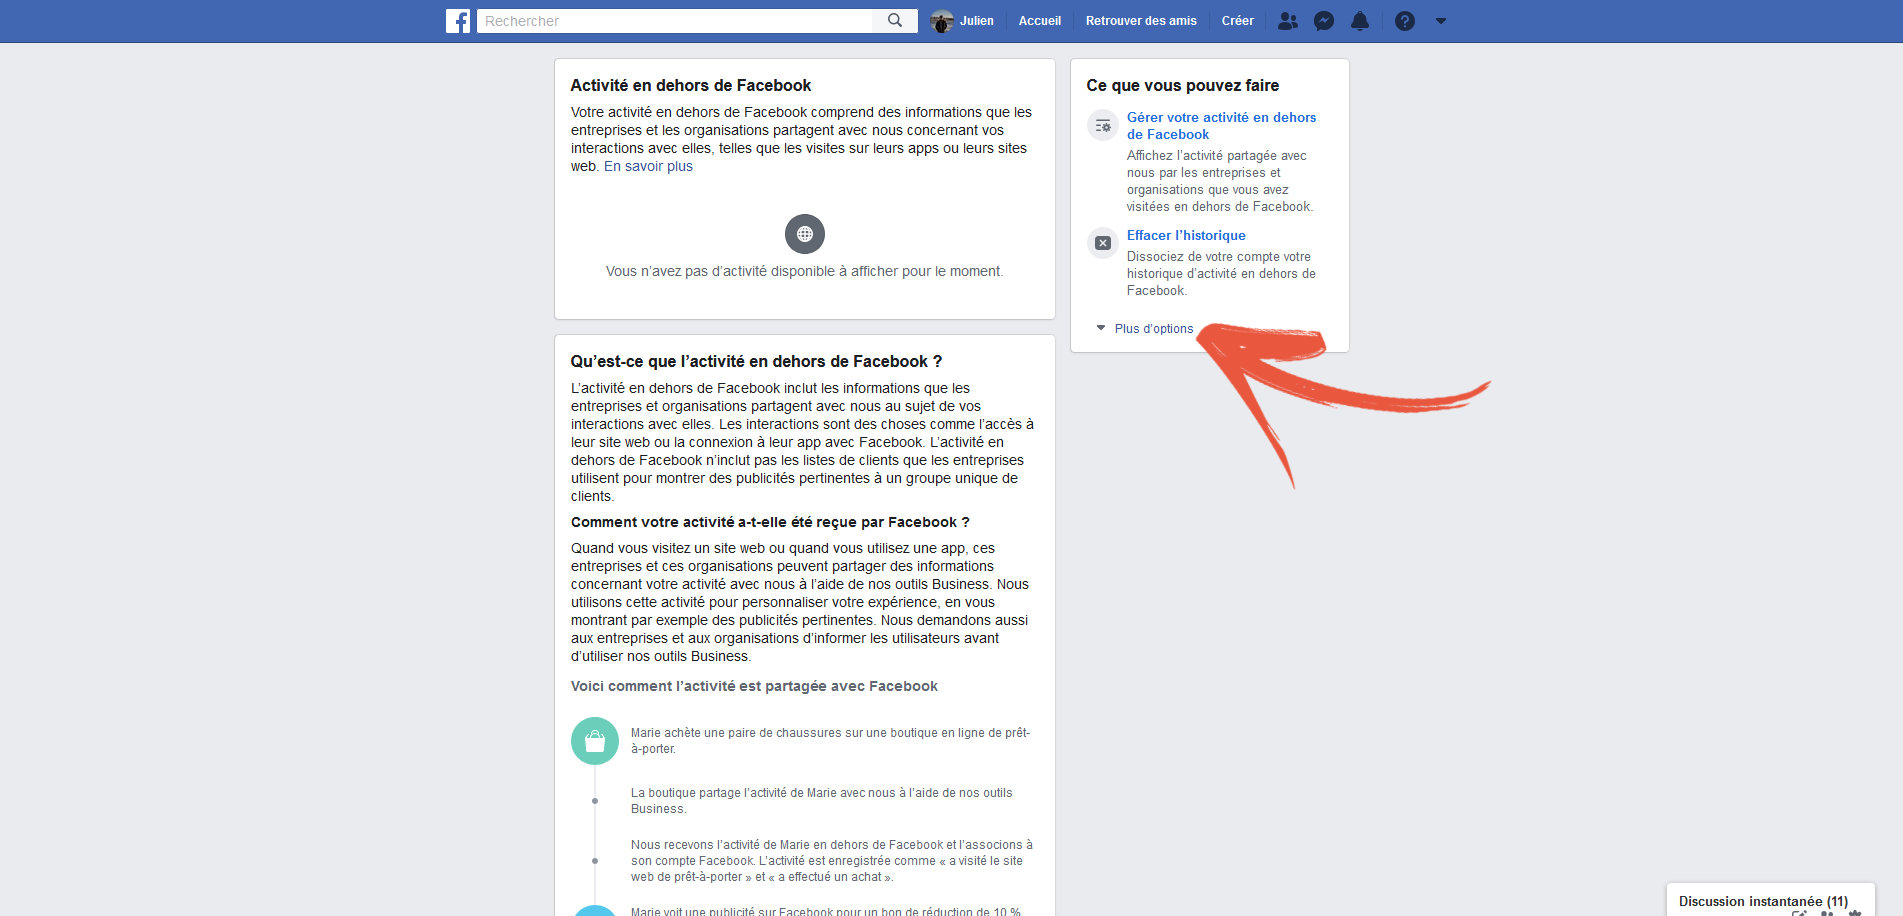 Facebook va supprimer la section Notre histoire des pages